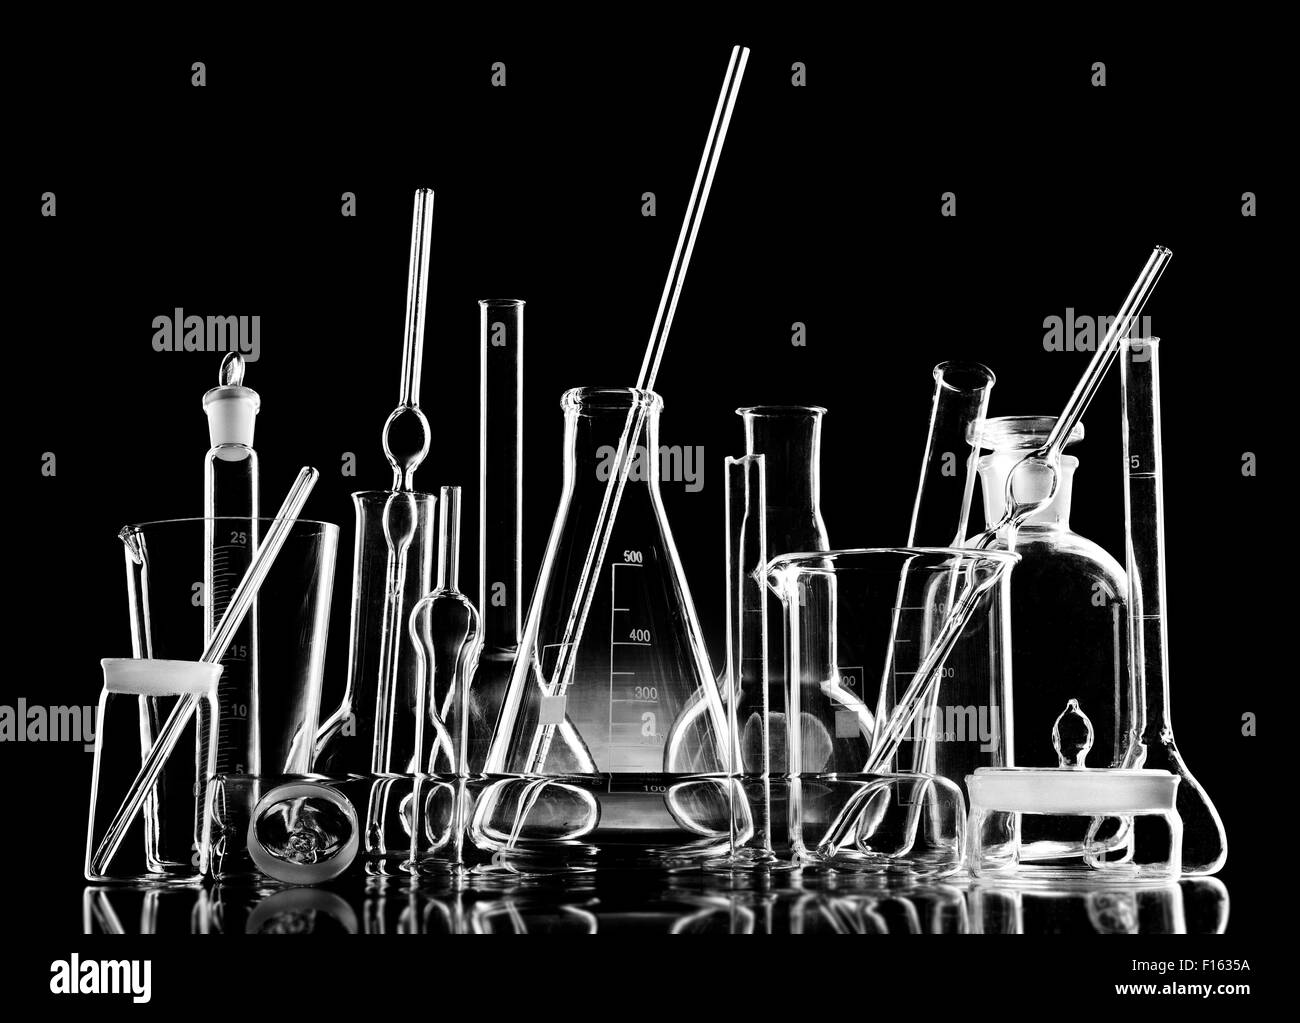 Laboratoire de l'objet groupe verrerie limpide, noir et blanc photo horizontale Banque D'Images